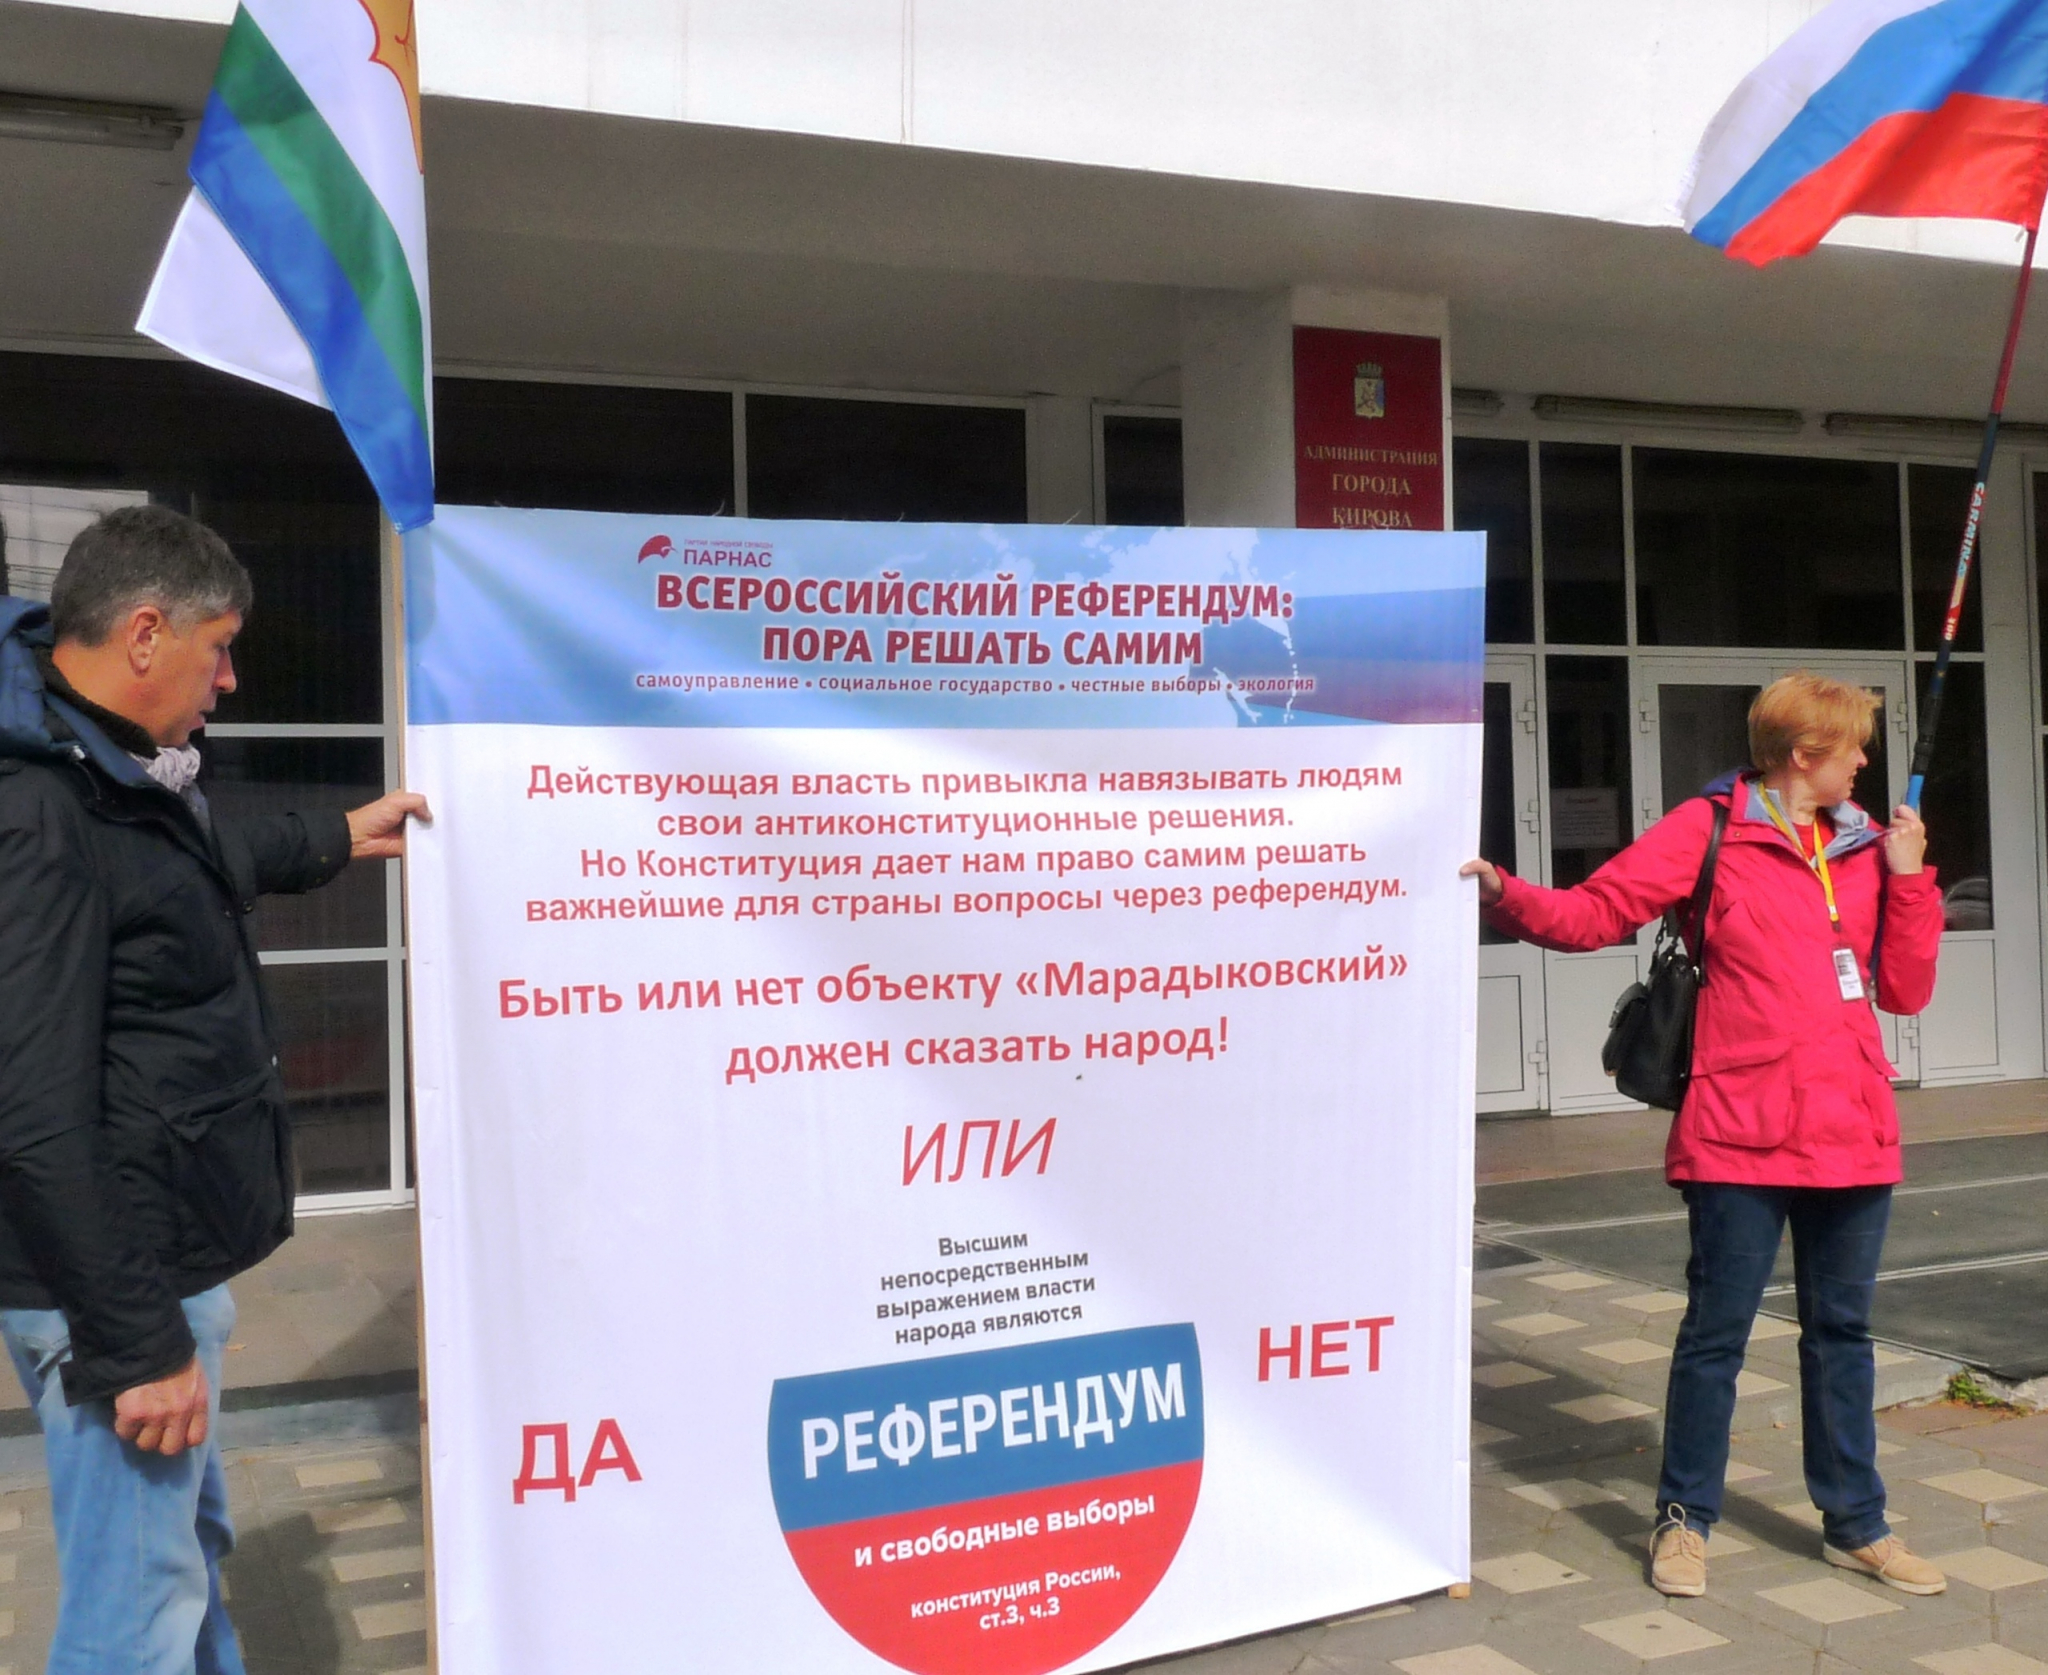 В Кирове проведут митинг, чтобы потребовать референдум о Марадыковском